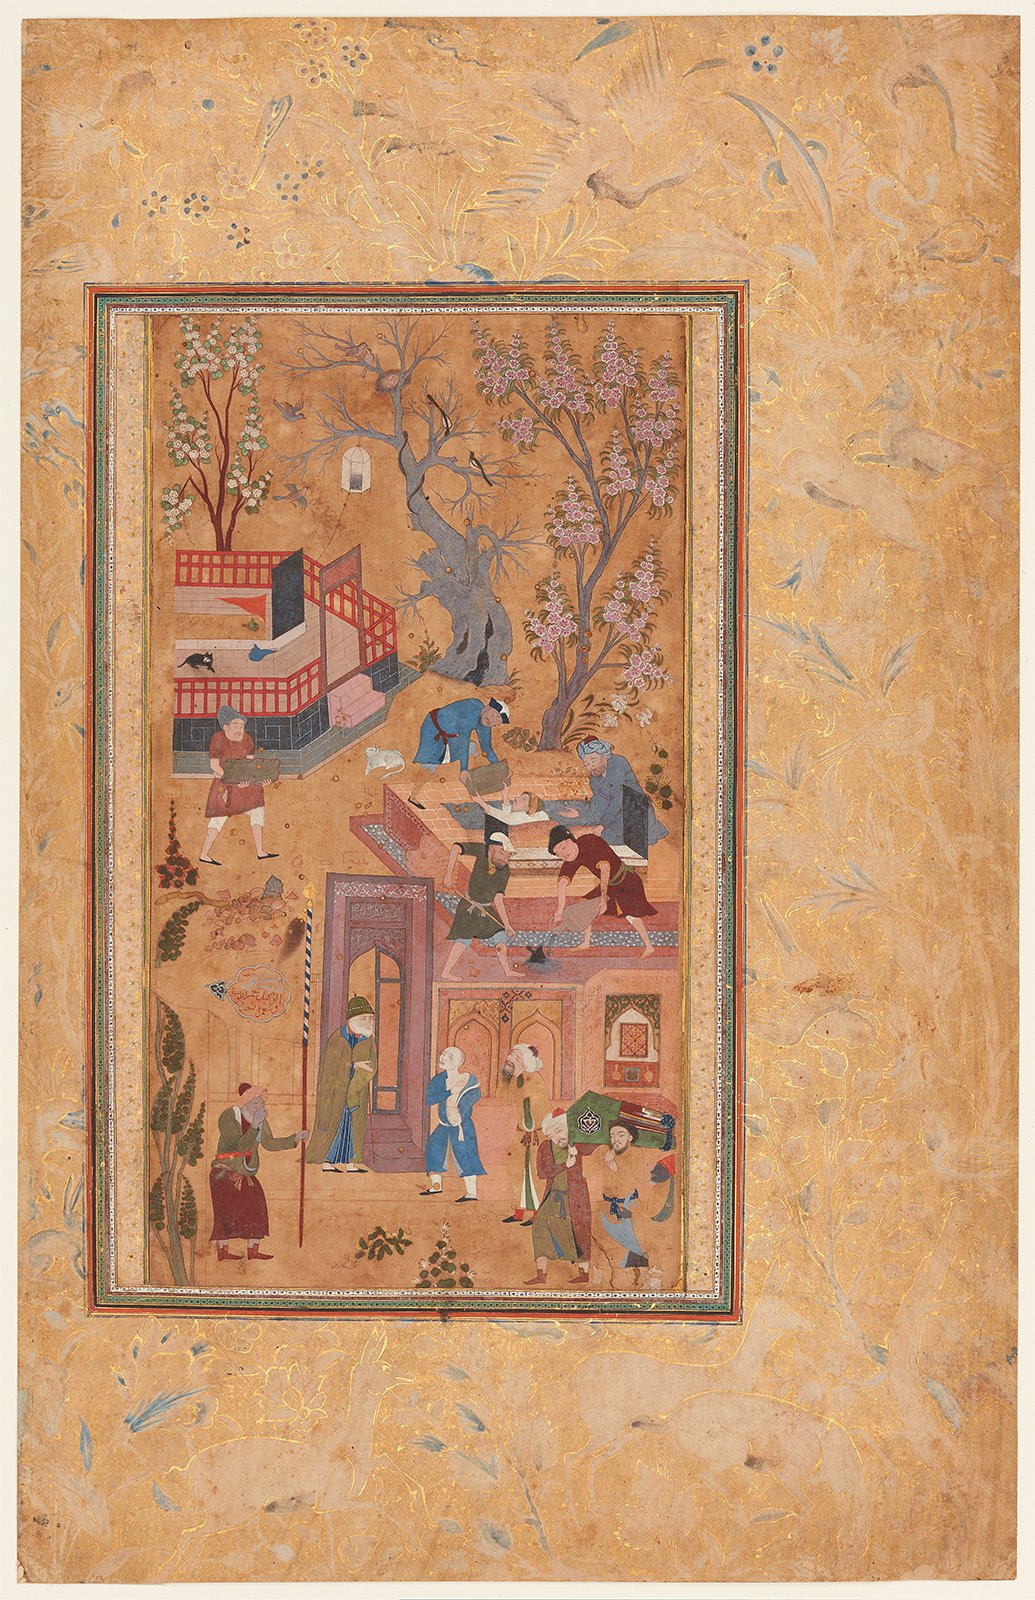 아버지를 애도하는 아들 by Sahifa Banu (attributed) - 1620년경 - 22.3 x 12.2 cm 